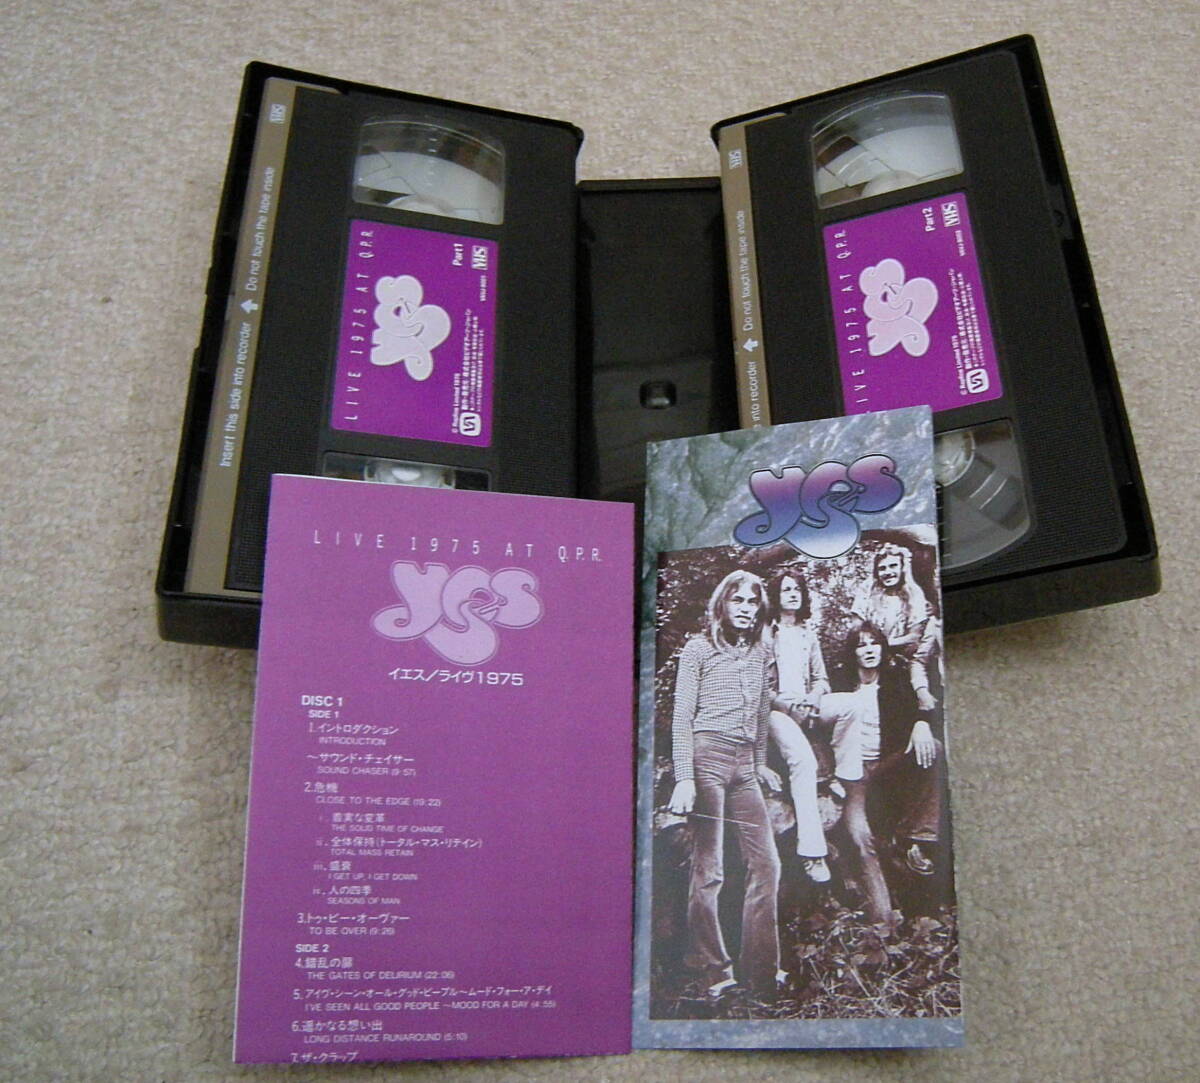  Progres серия VHS видео 4 позиций комплект ies, розовый * floyd, GENESIS, Peter *ga желтохвост L 